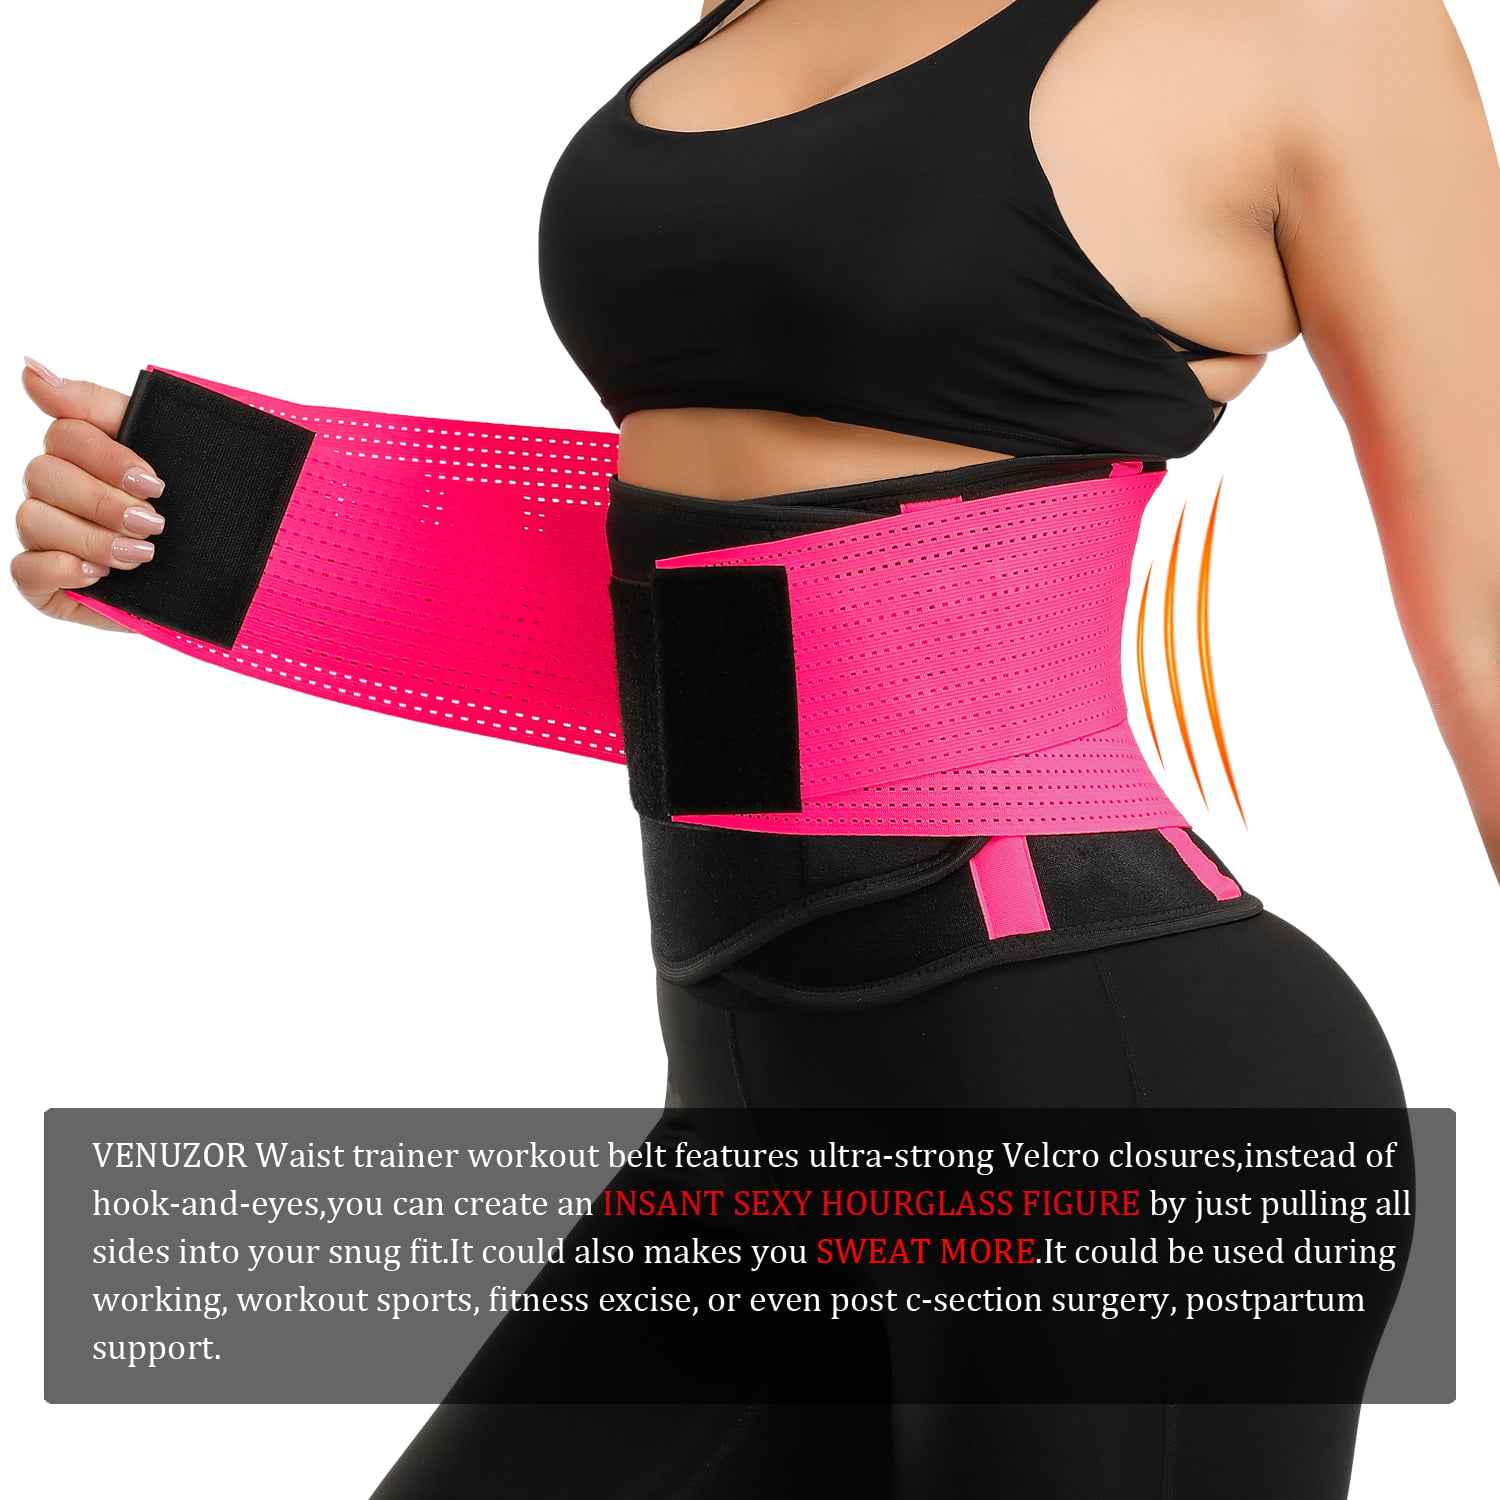 Slimming Body Shaper Belt Sport Workout Back Support Girdle Belt VENUZOR Waist Trainer Belt for Women Waist Cincher Trimmer Weight Loss Ab Belt